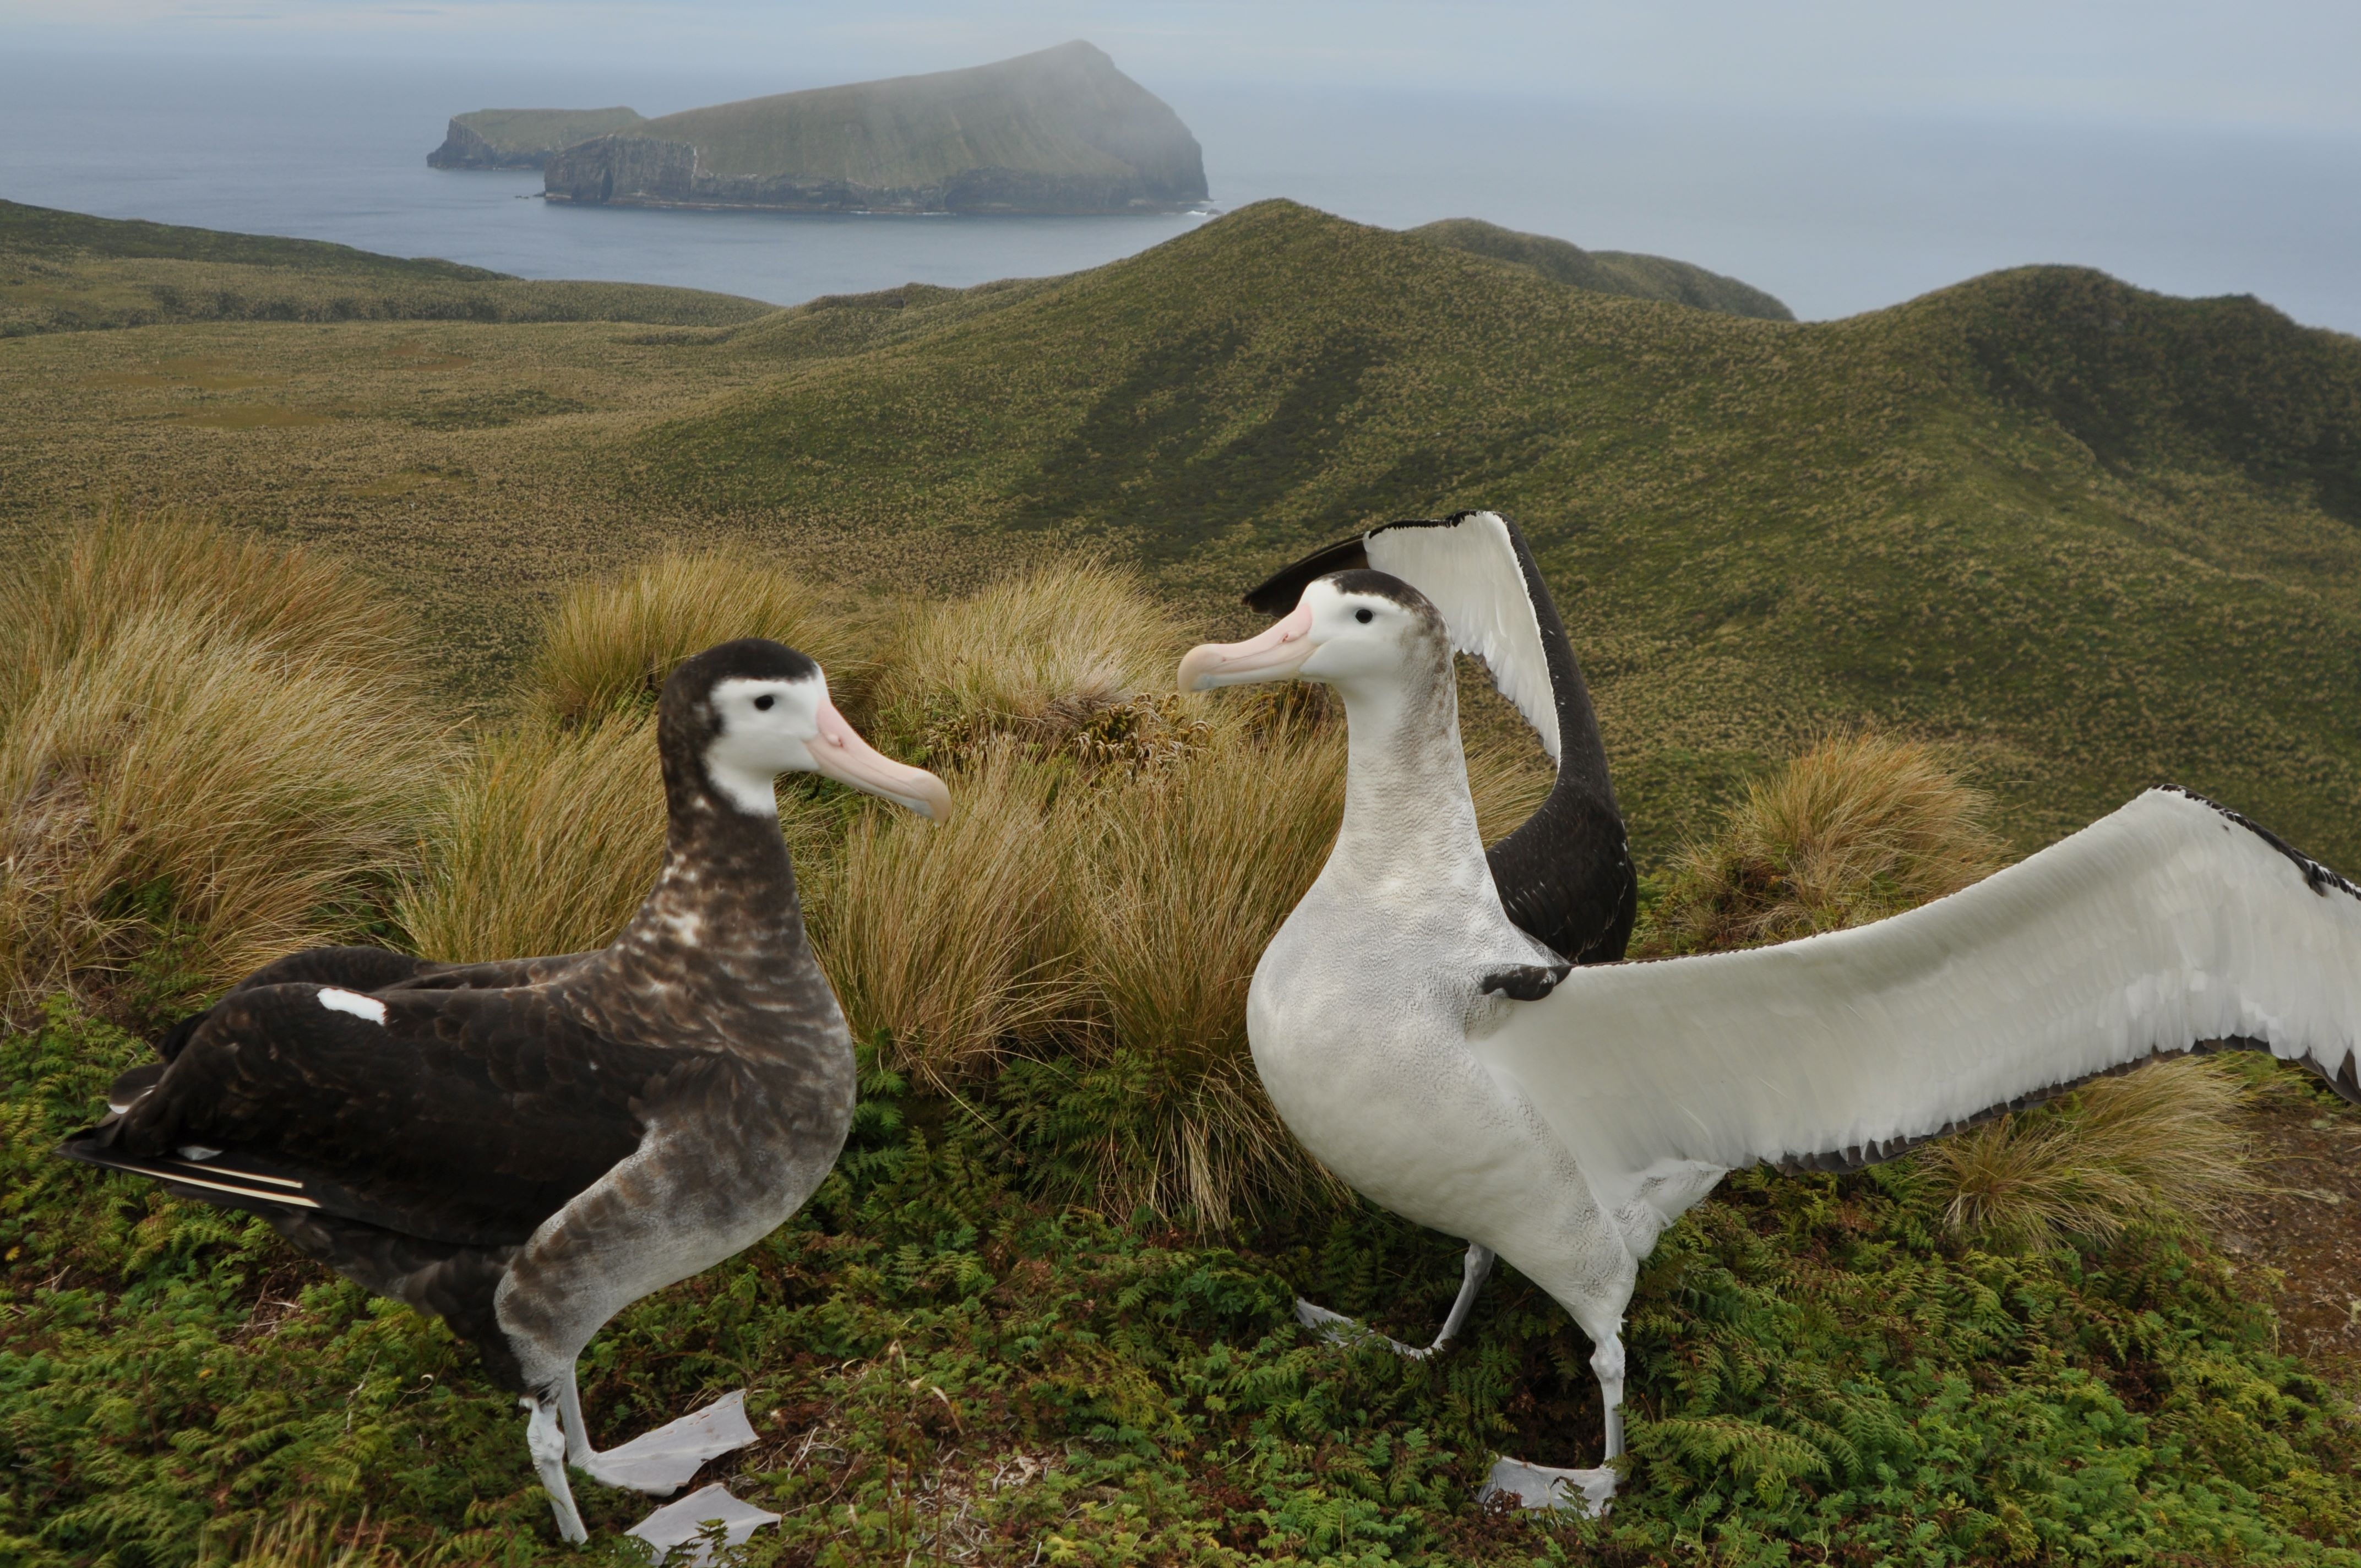 Pair of Antipodean albatross